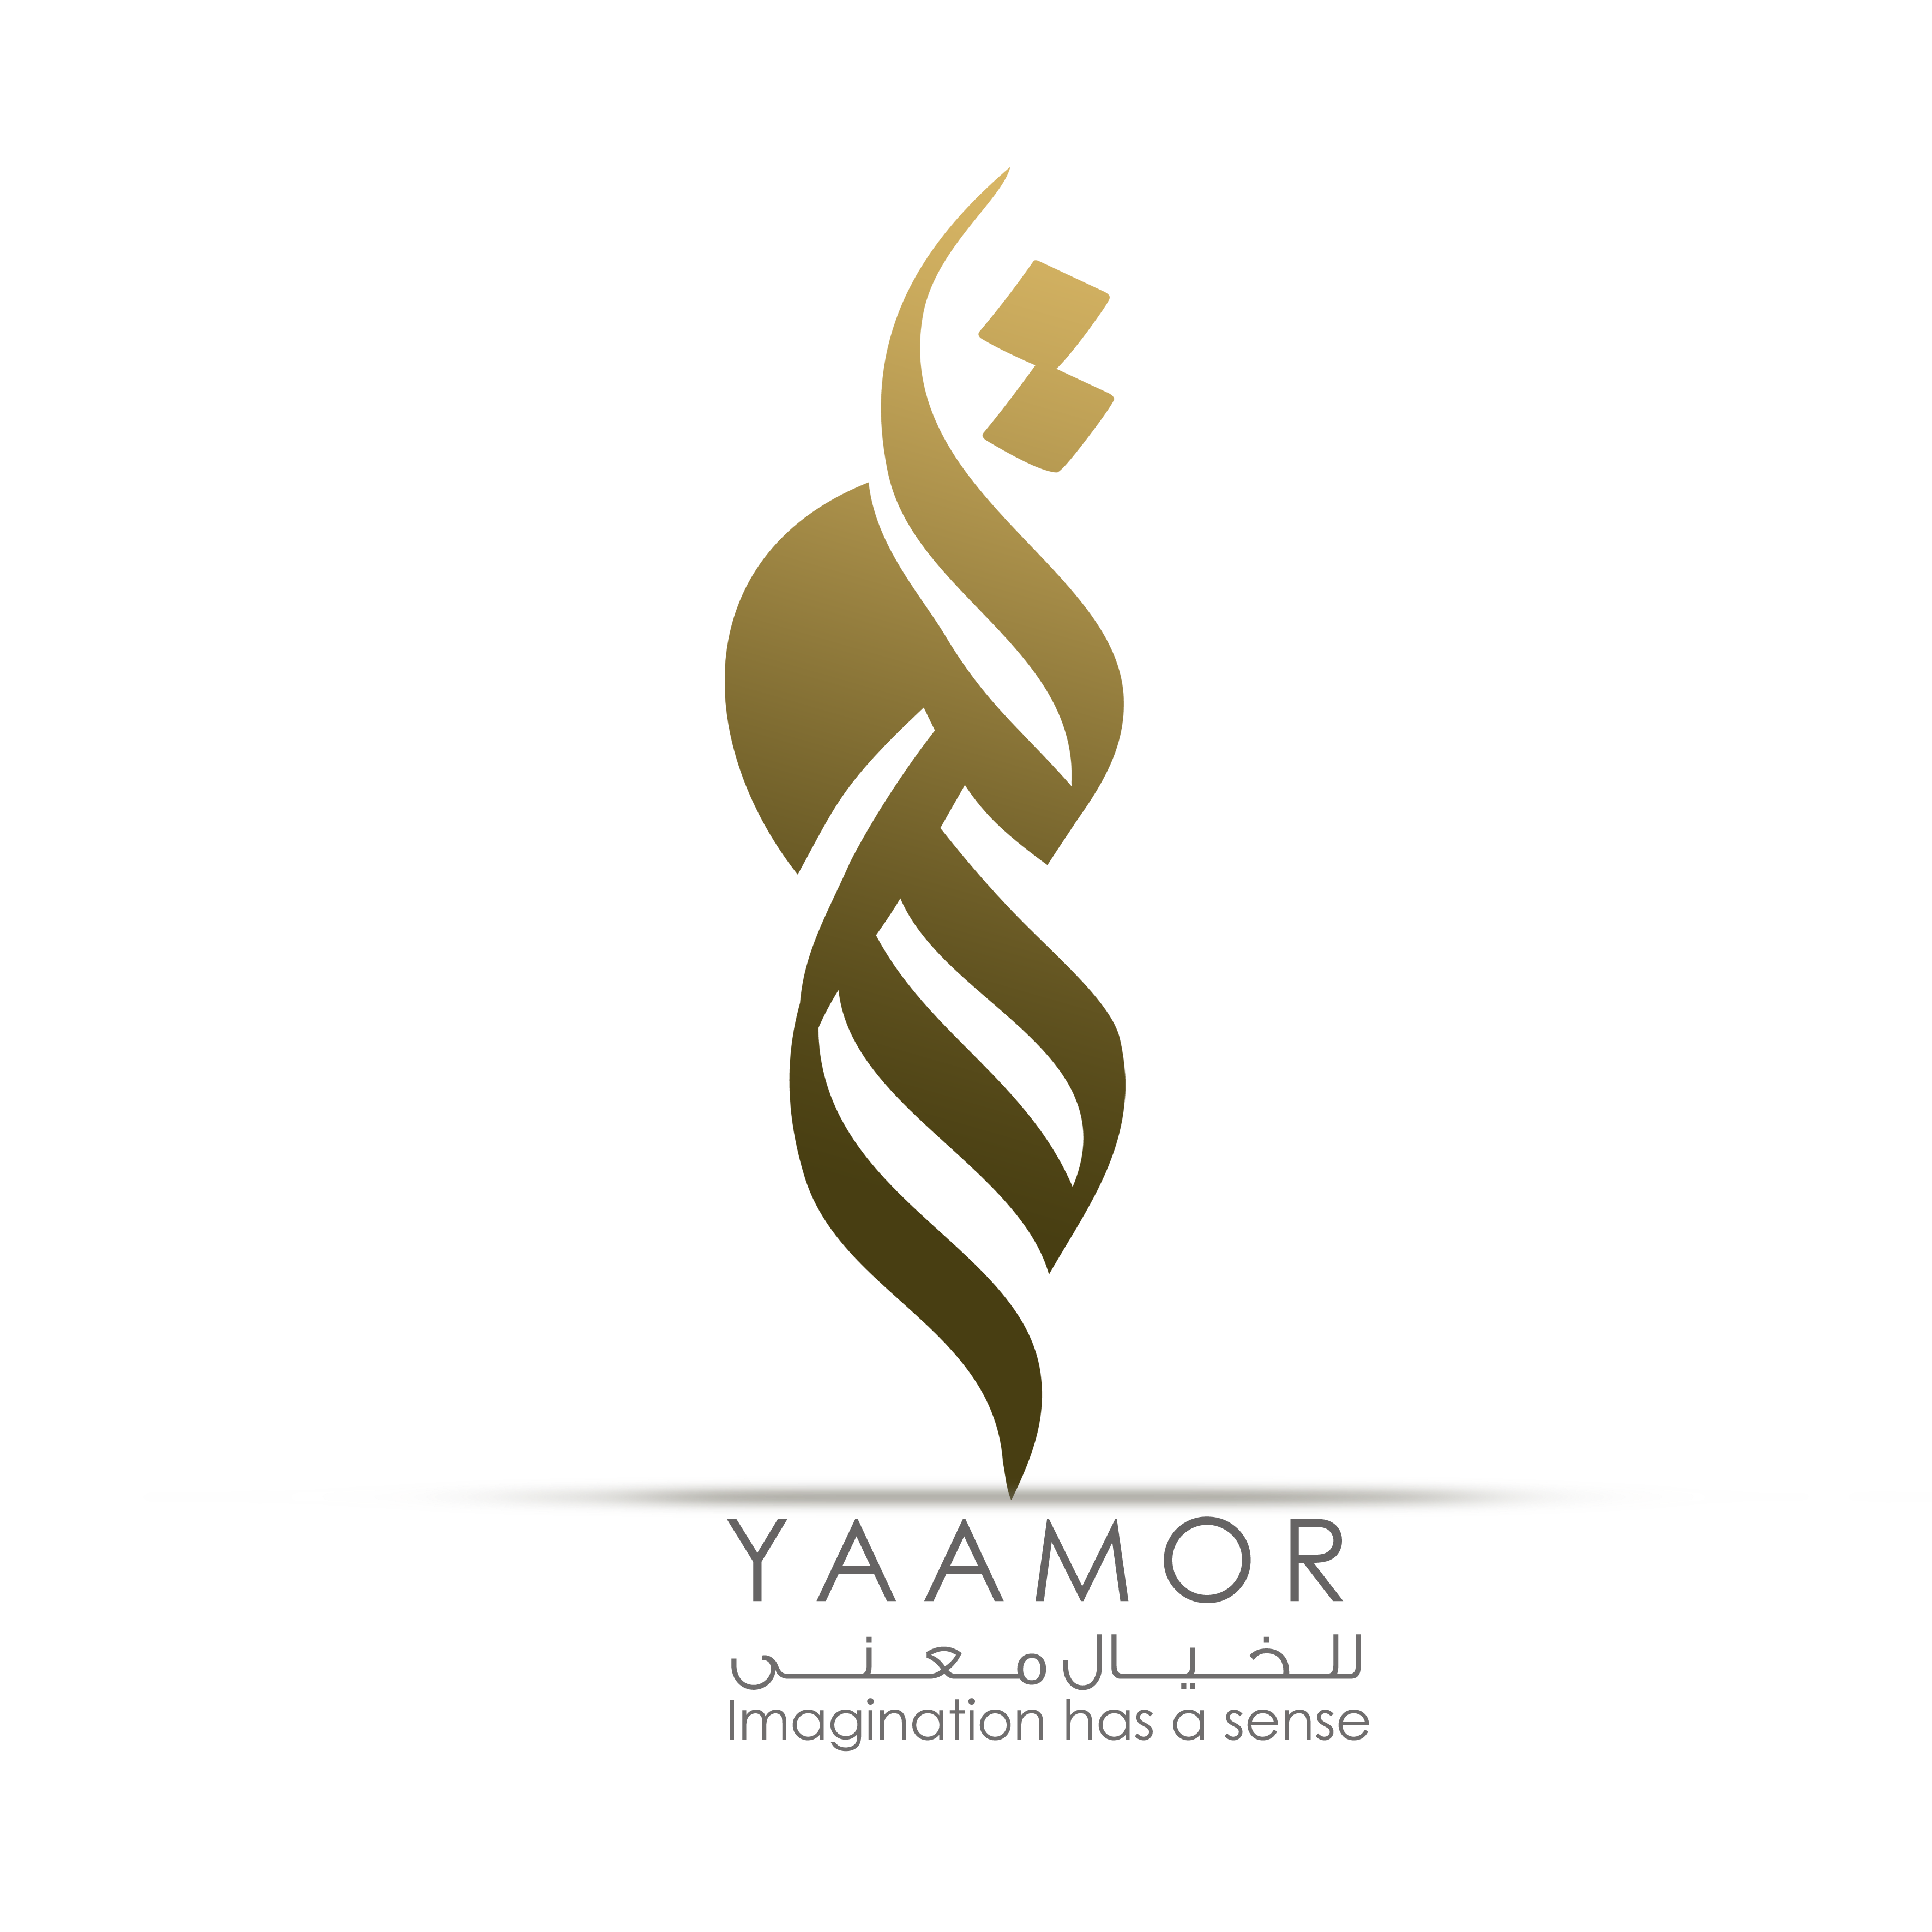 Yammor | شركة يعمر للإستشارات الهندسية